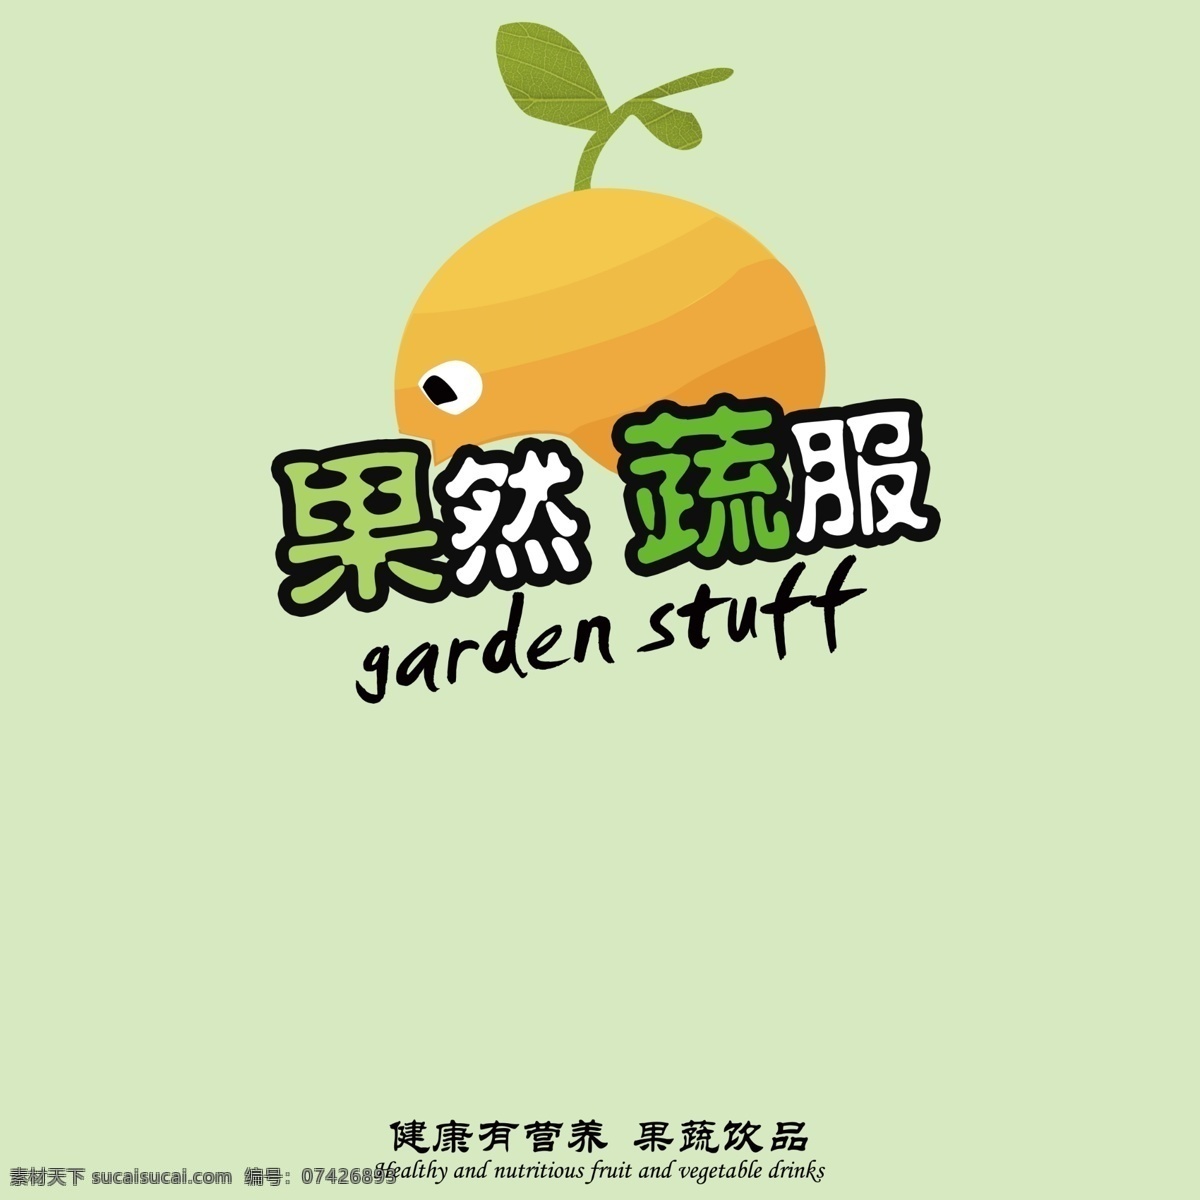 果蔬logo 绘画 卡通 可爱logo 绿色 绿色食品 logo logo设计 蔬菜 水果 商标 水果logo 营养 灰色